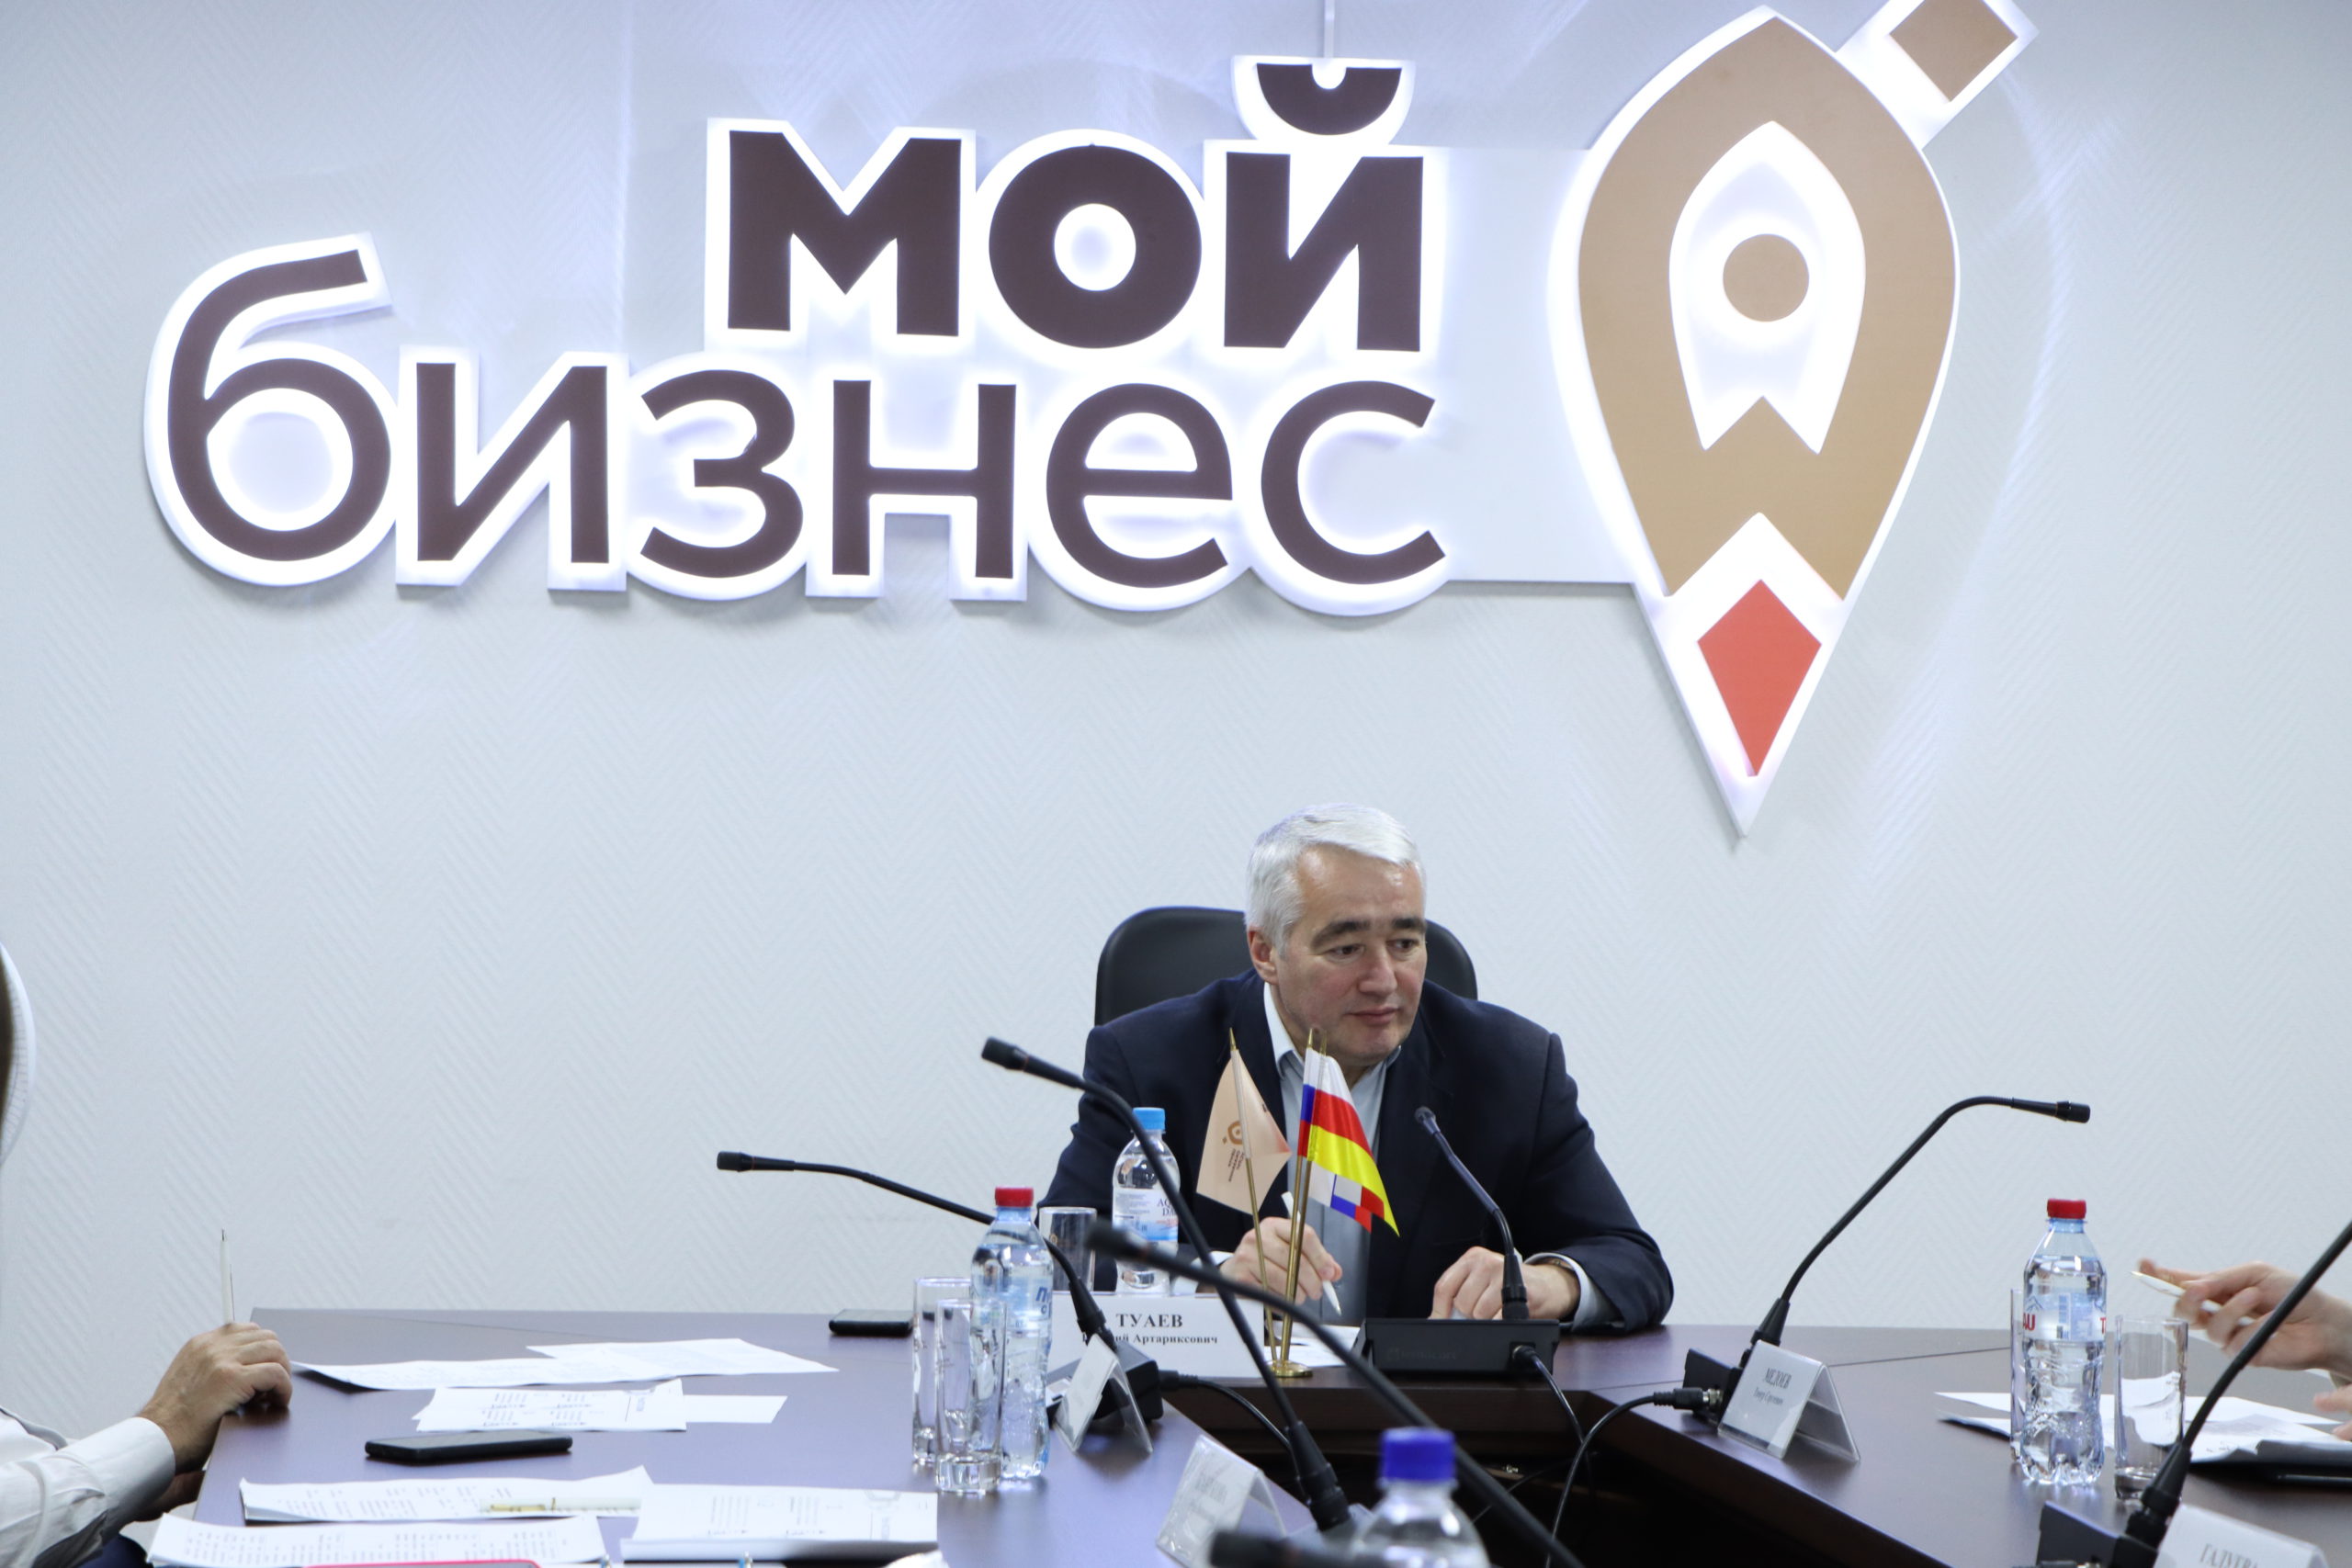 Шесть субъектов МСП Северной Осетии включены в реестр социальных предпринимателей